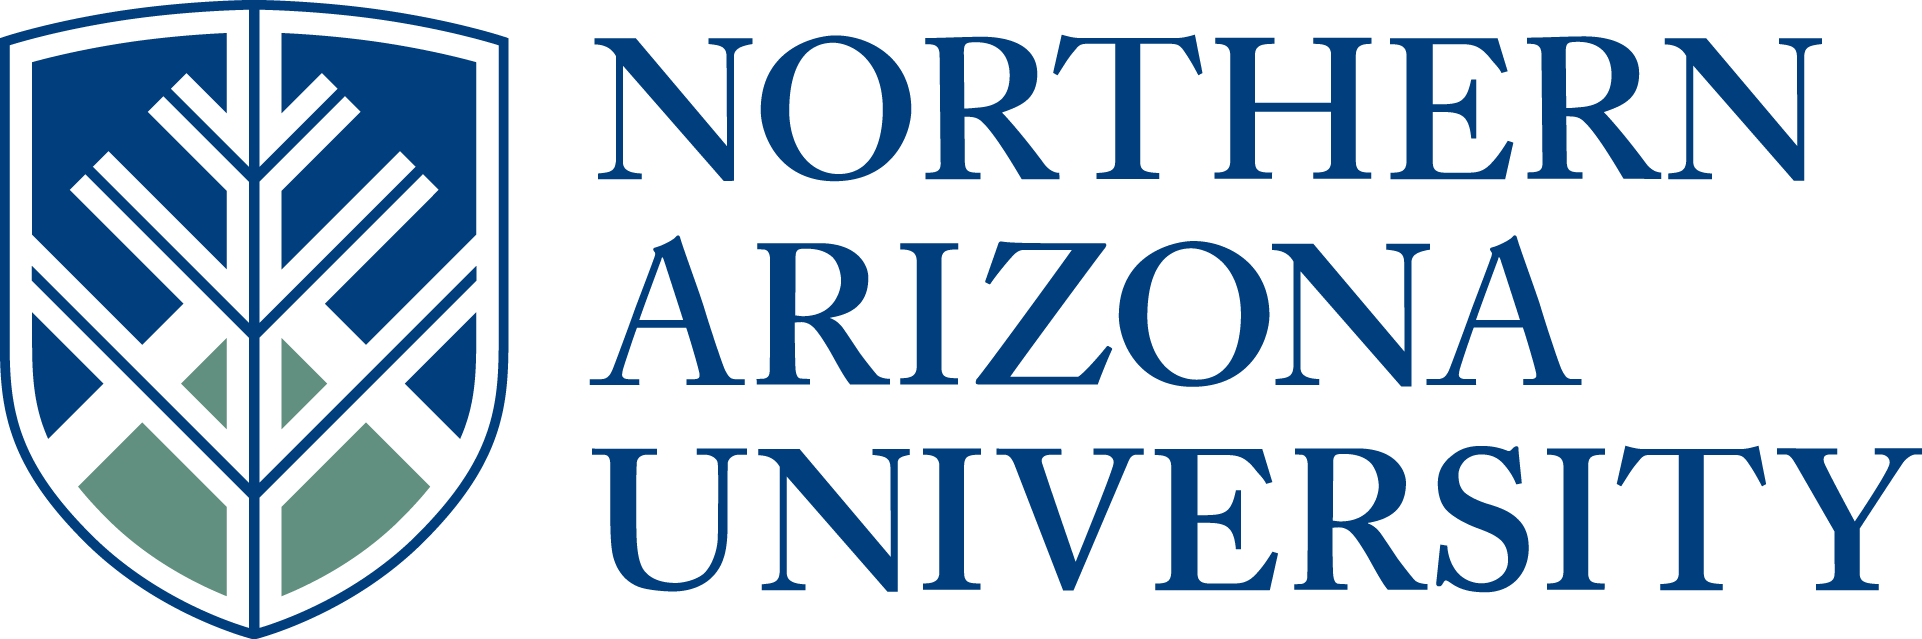 Arizona Logo - DLIAward Recipient Arizona University